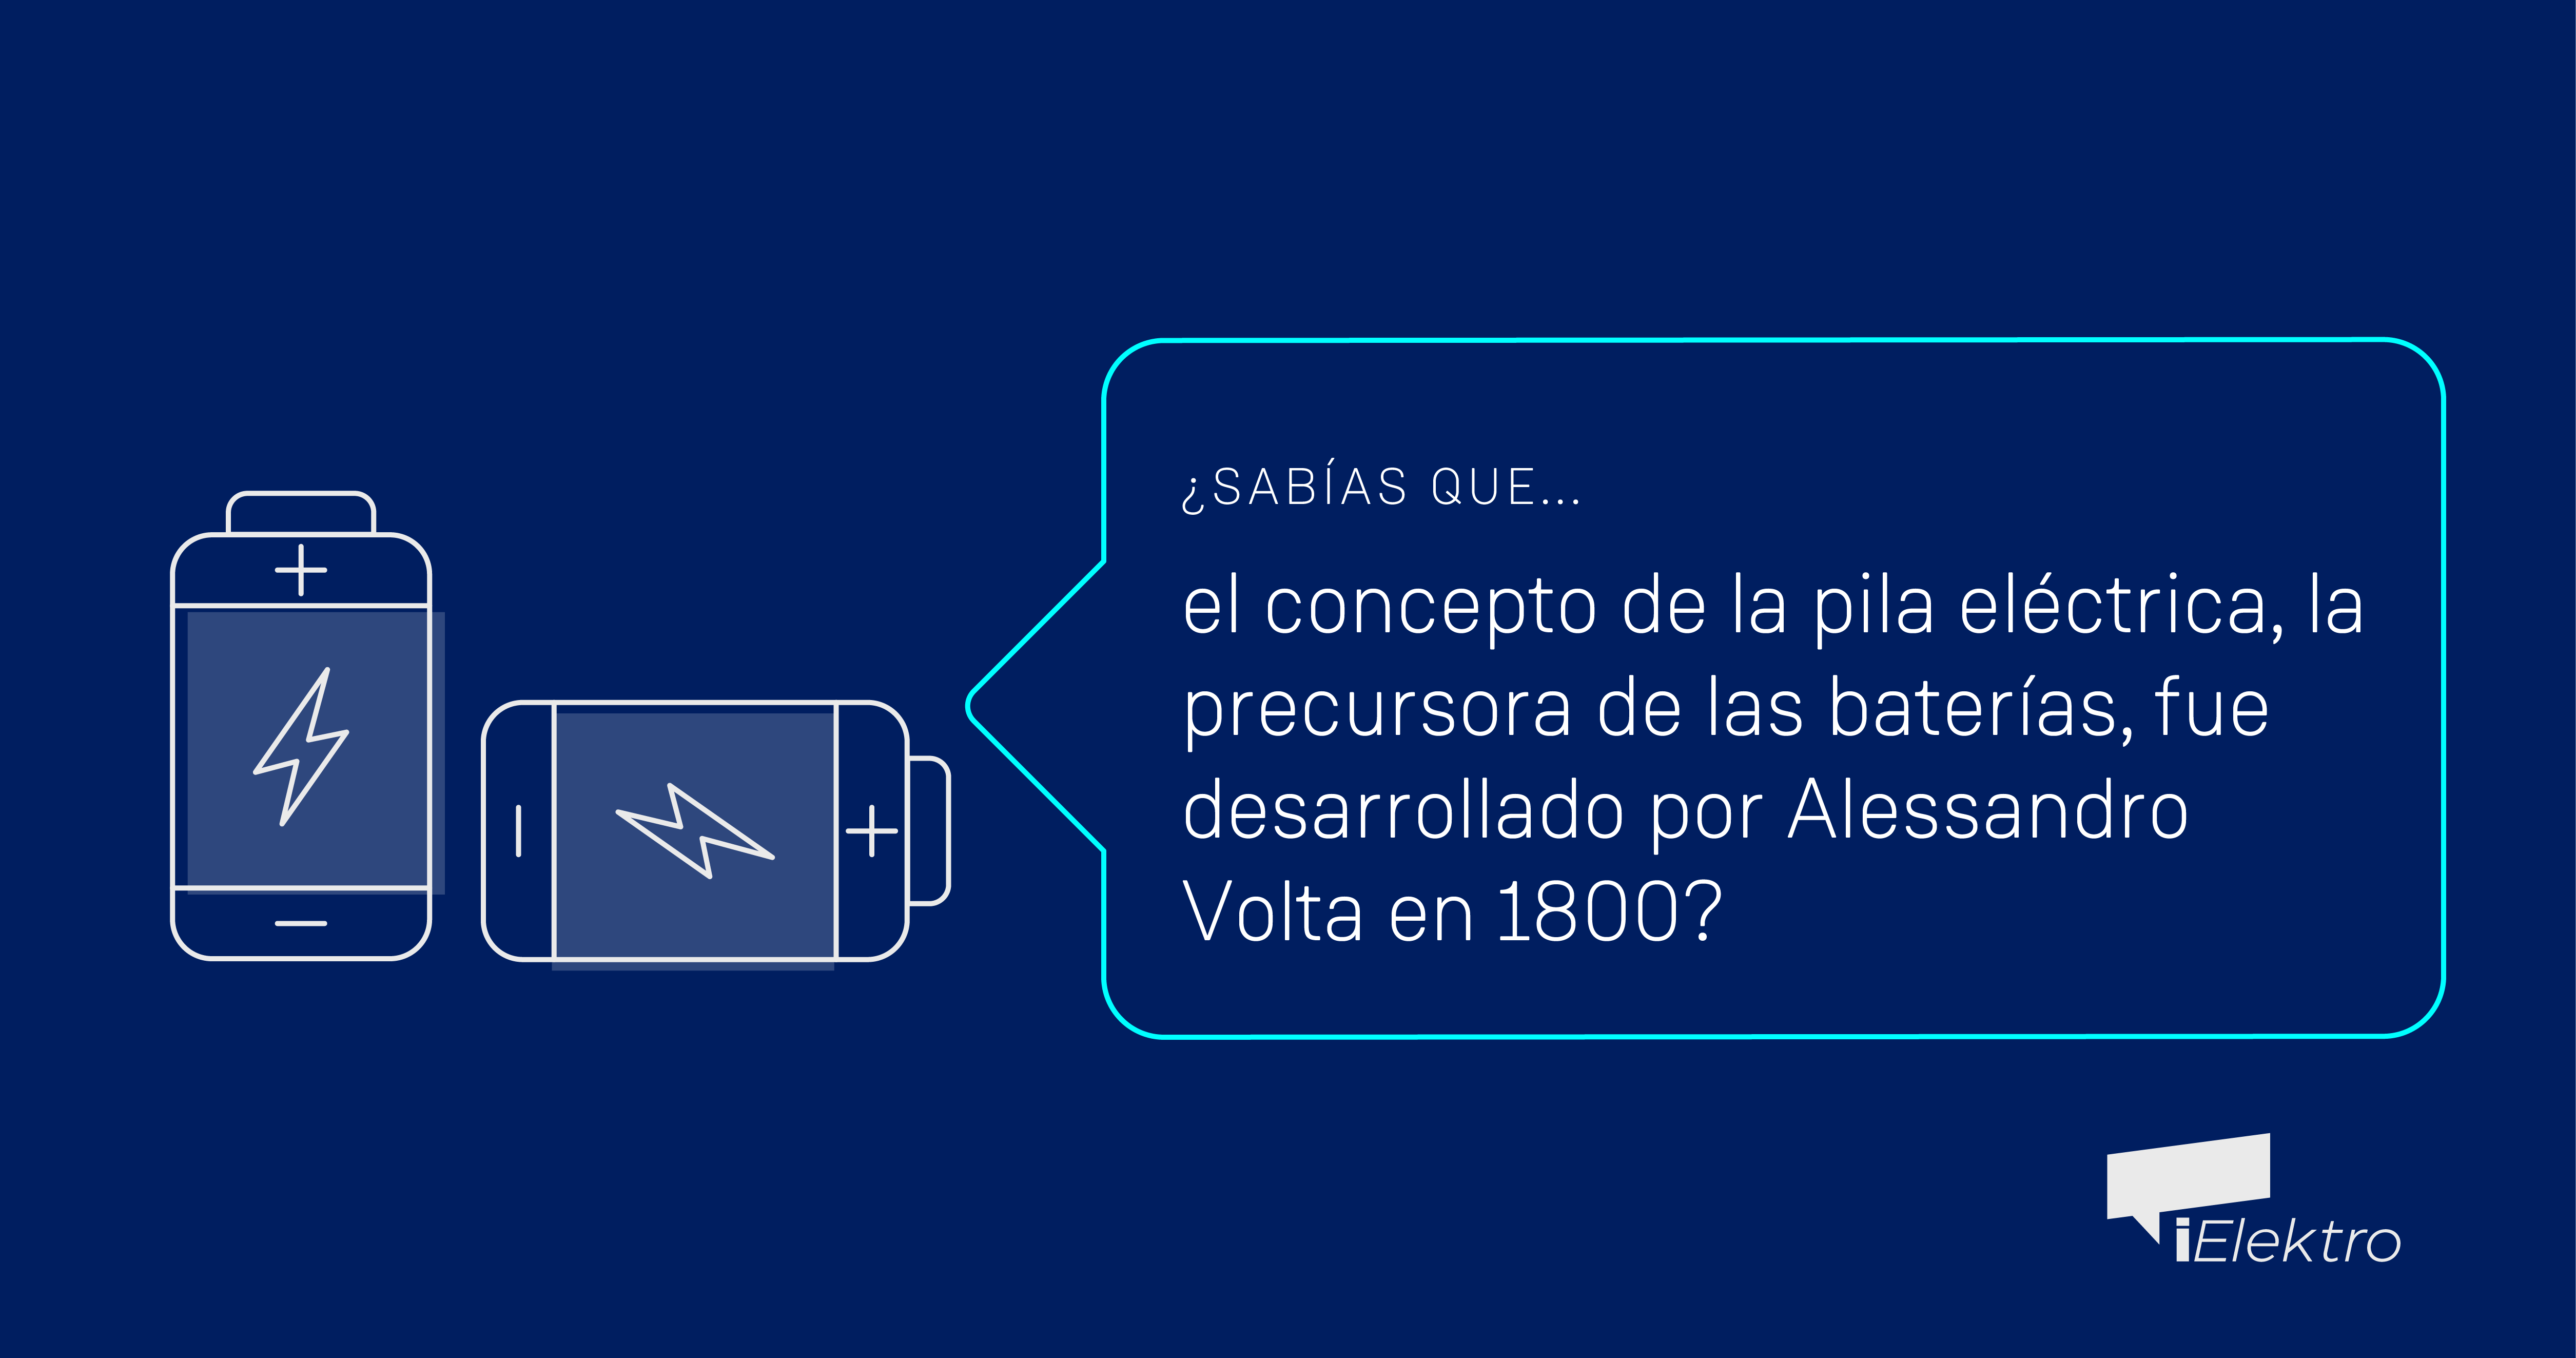 ¿Sabías que el concepto de pila eléctrica fue desarrollado por Alessandro Volta?